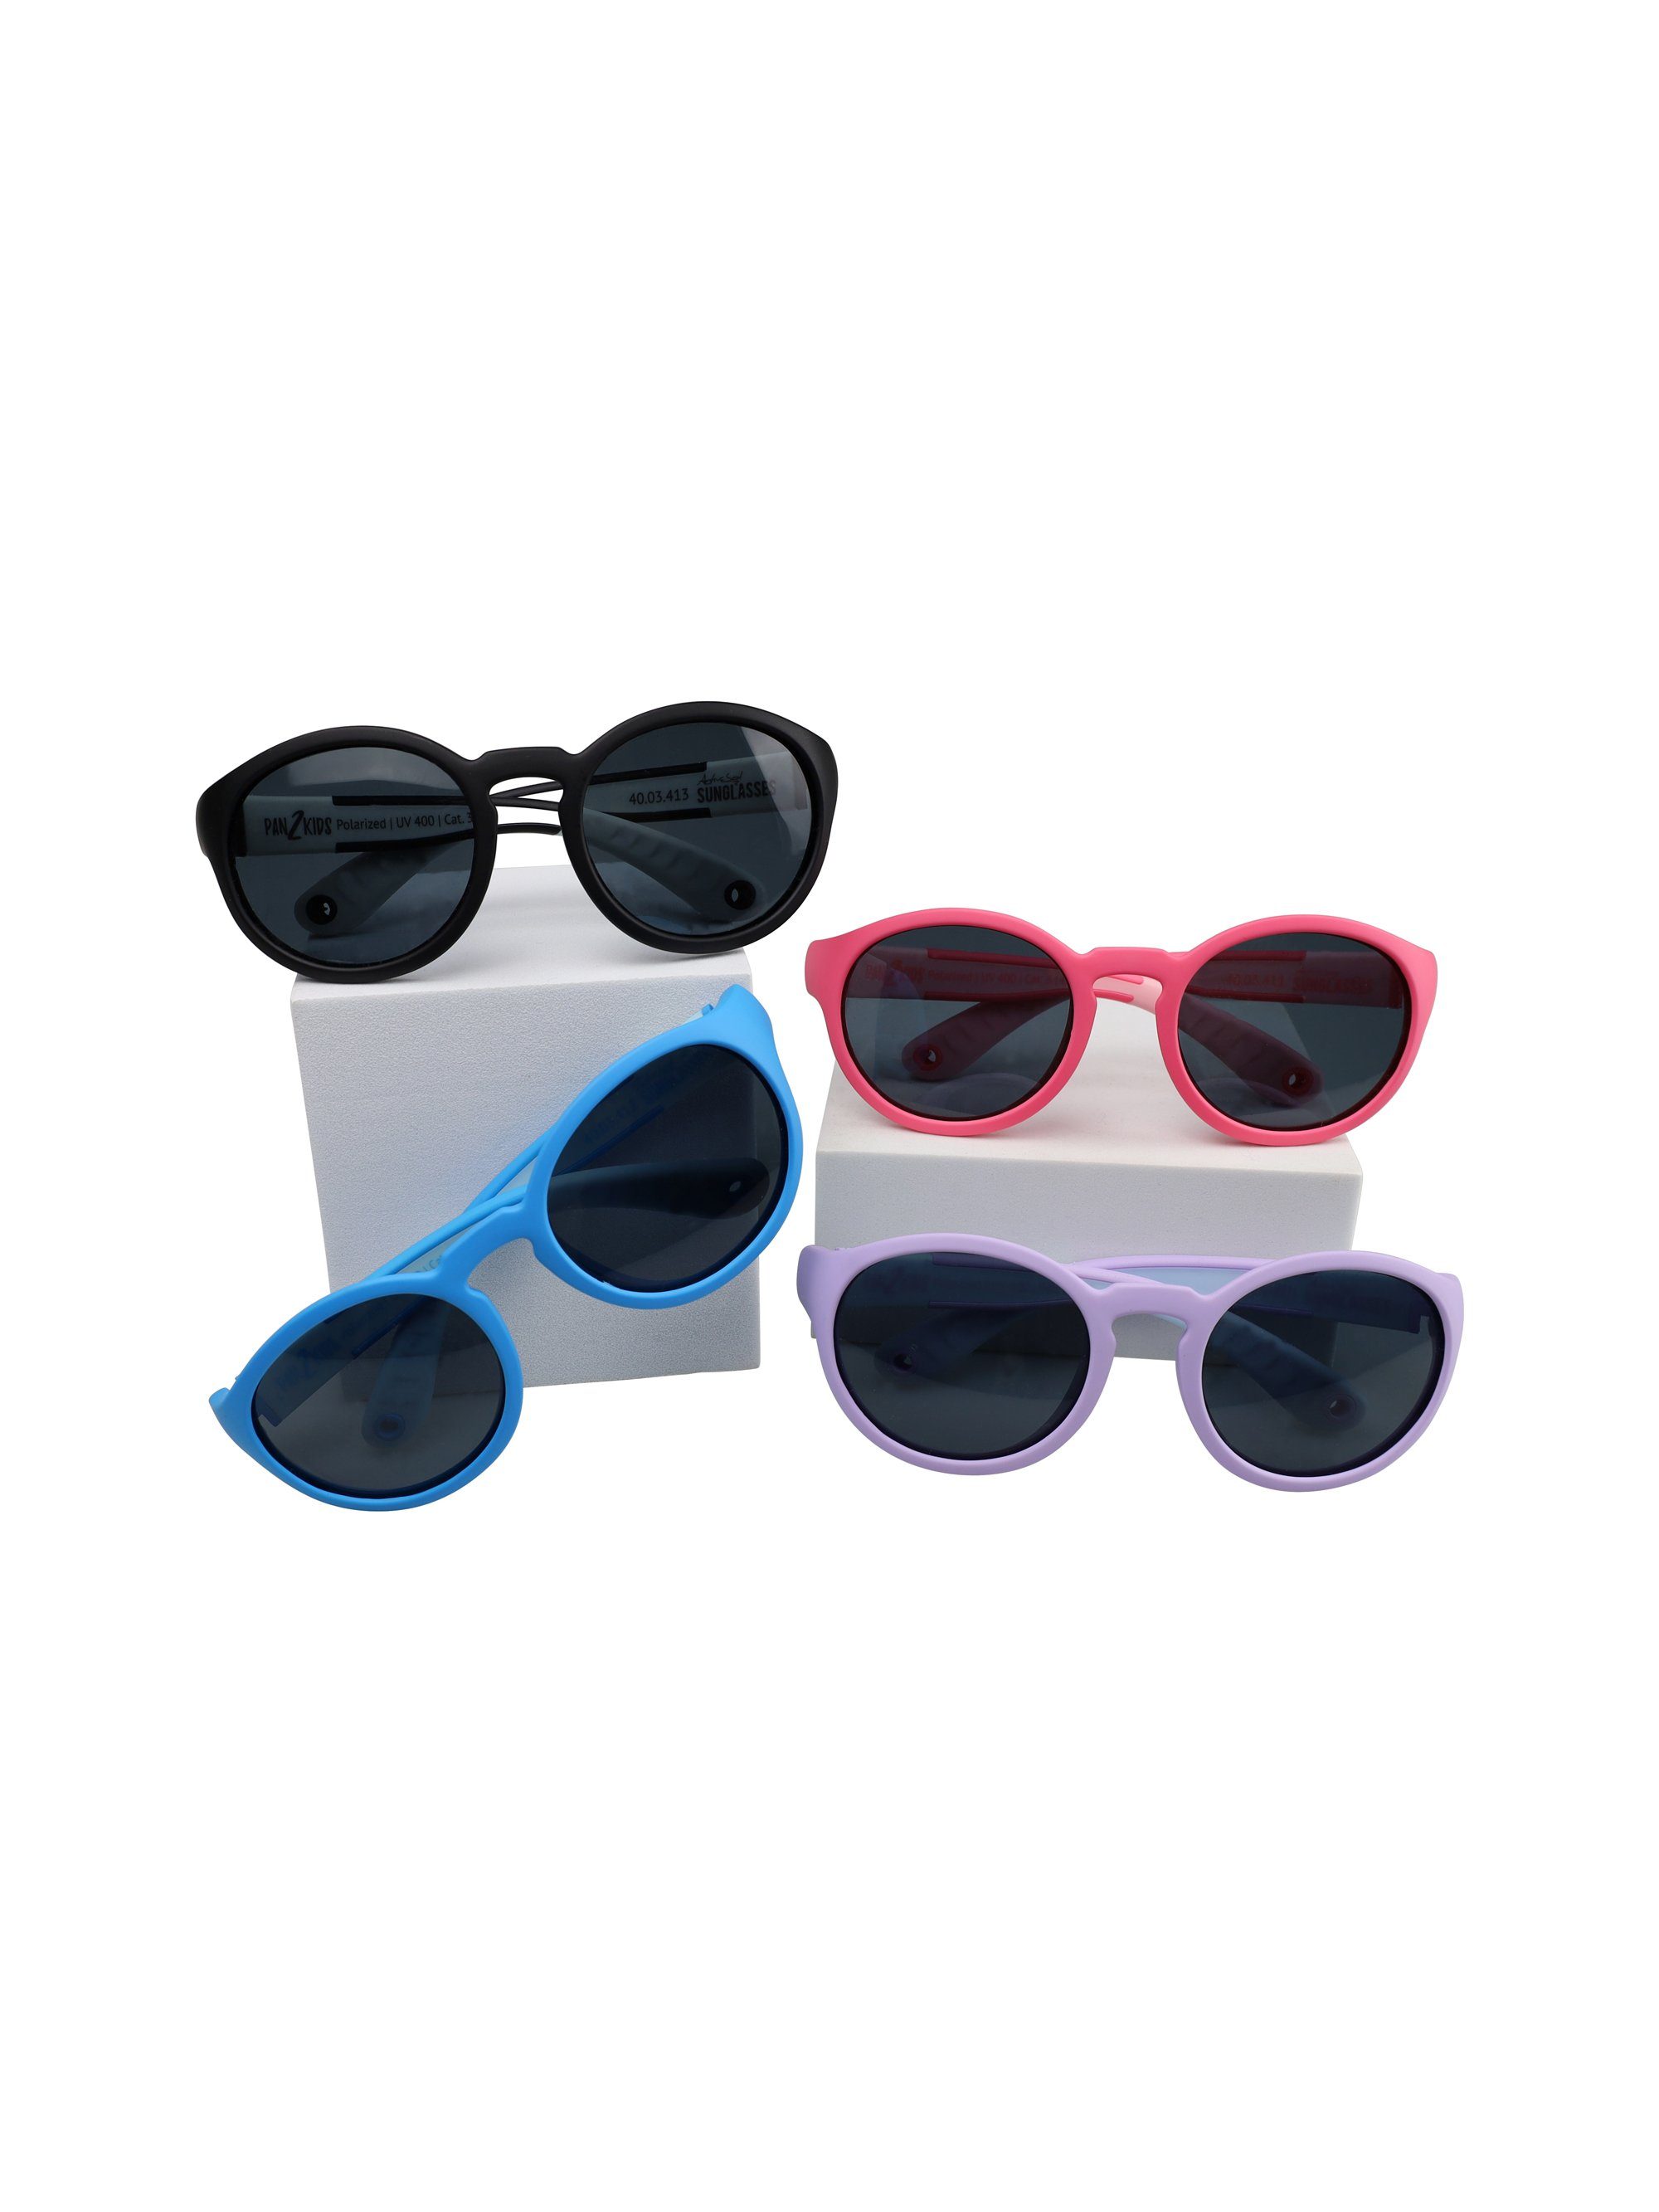 SUNGLASSES Panto 5 Design, für Digital Kinder Pan2Kids, – Jahre, - Sonnenbrille 2 polarisiert ActiveSol Lavender